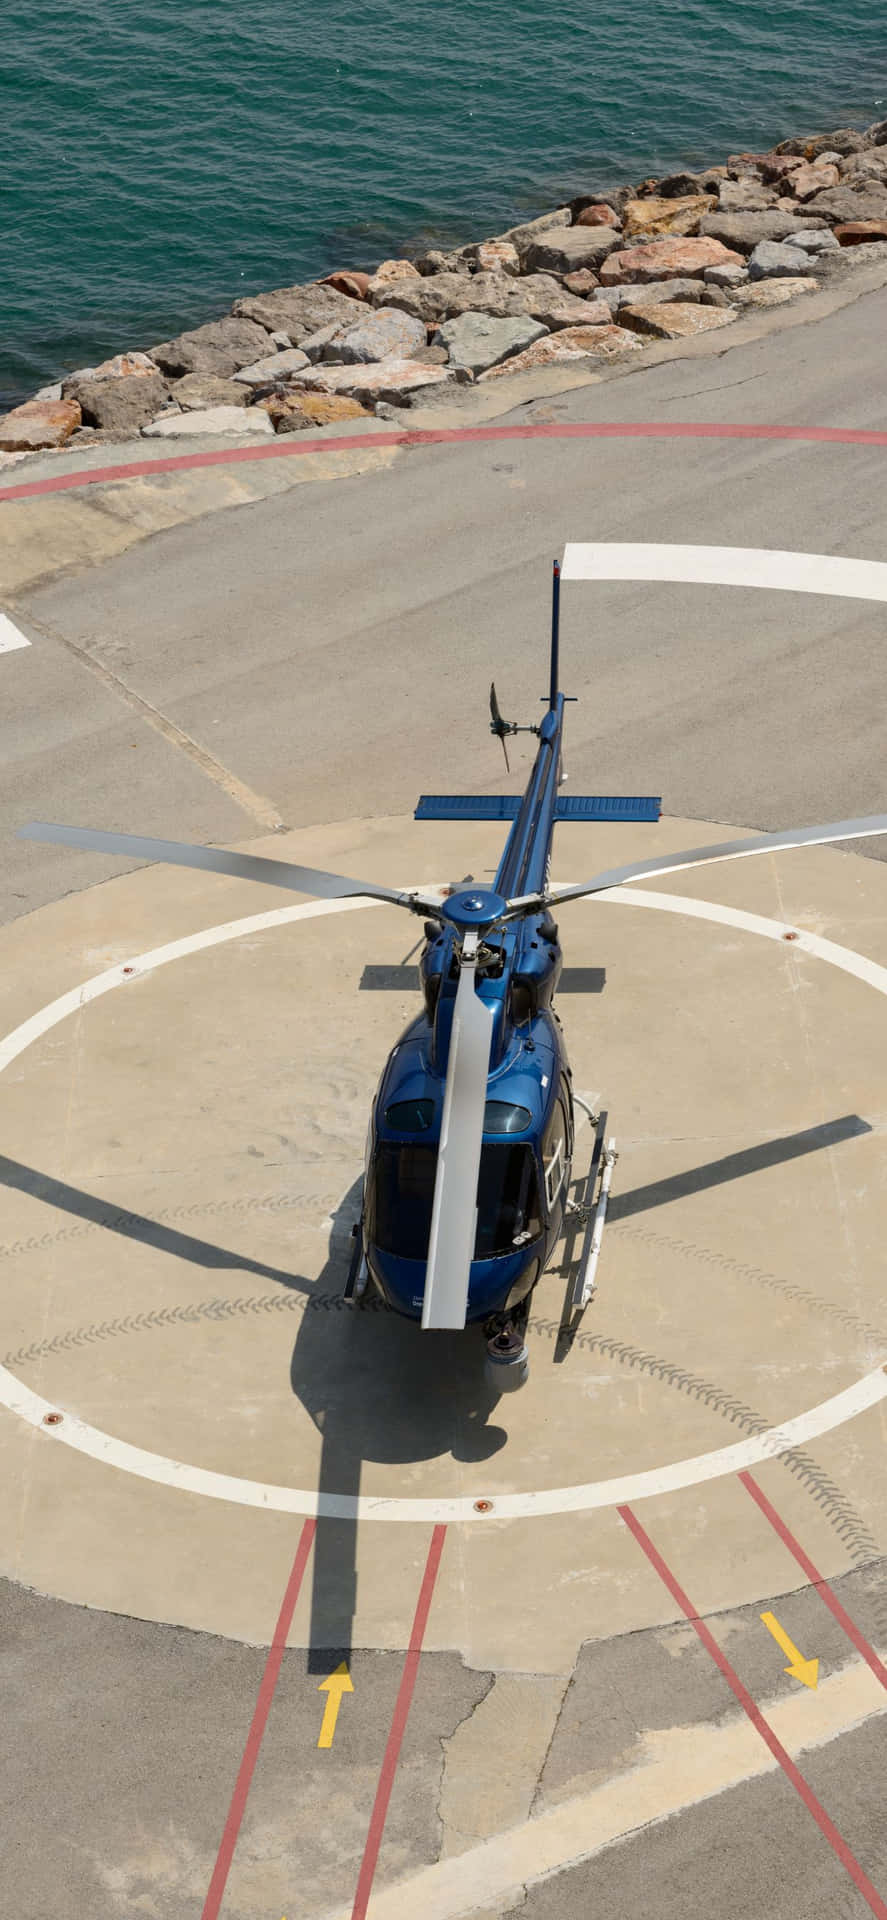 En helikopter er parkeret på landingsbanen